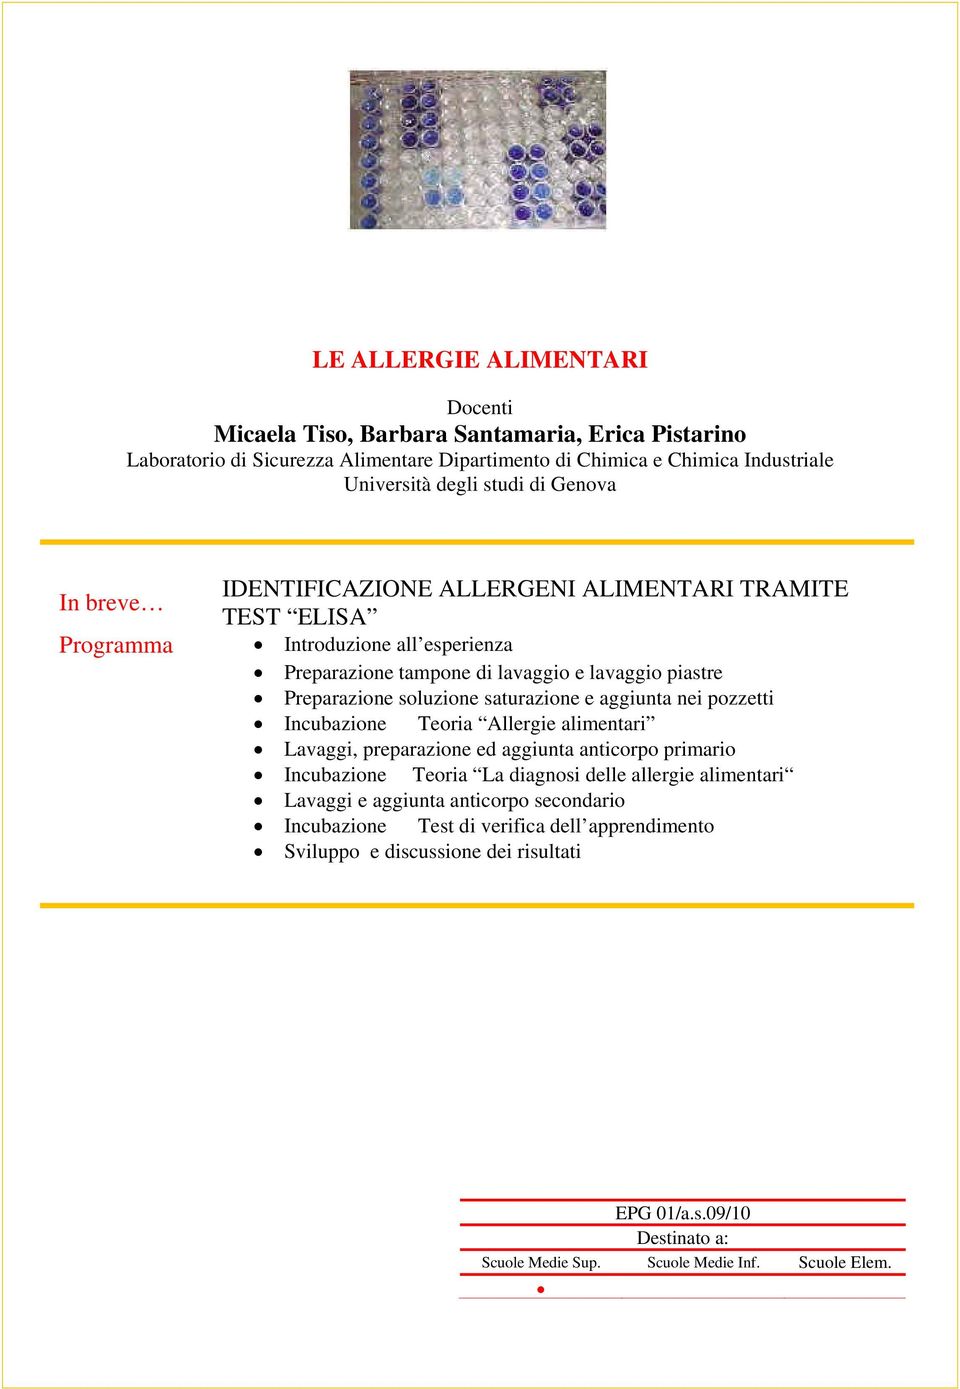 Teoria Allergie alimentari Lavaggi, preparazione ed aggiunta anticorpo primario Incubazione Teoria La diagnosi delle allergie